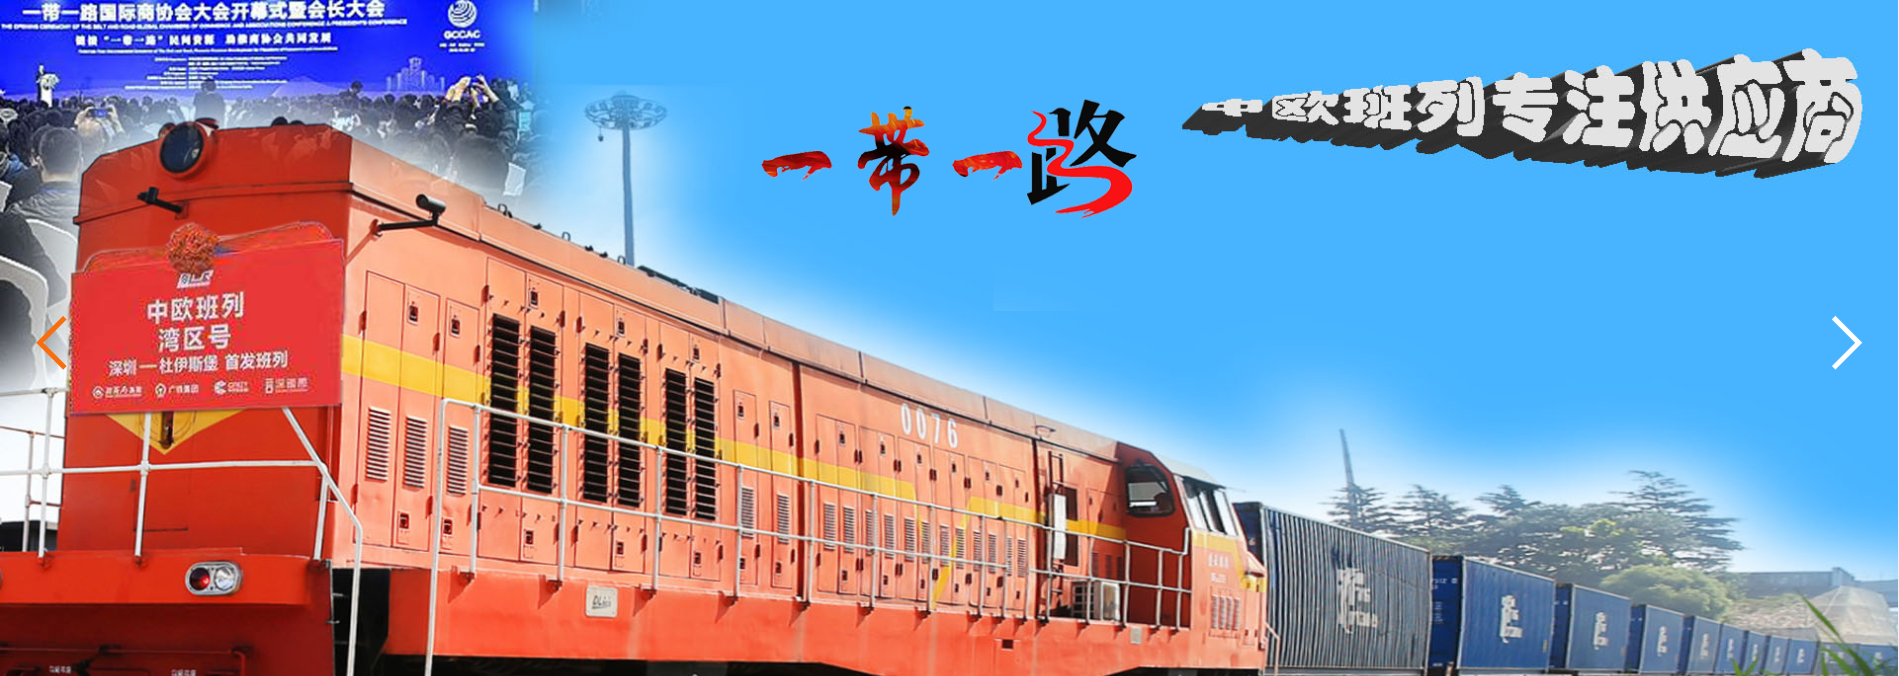 中欧铁路.jpg